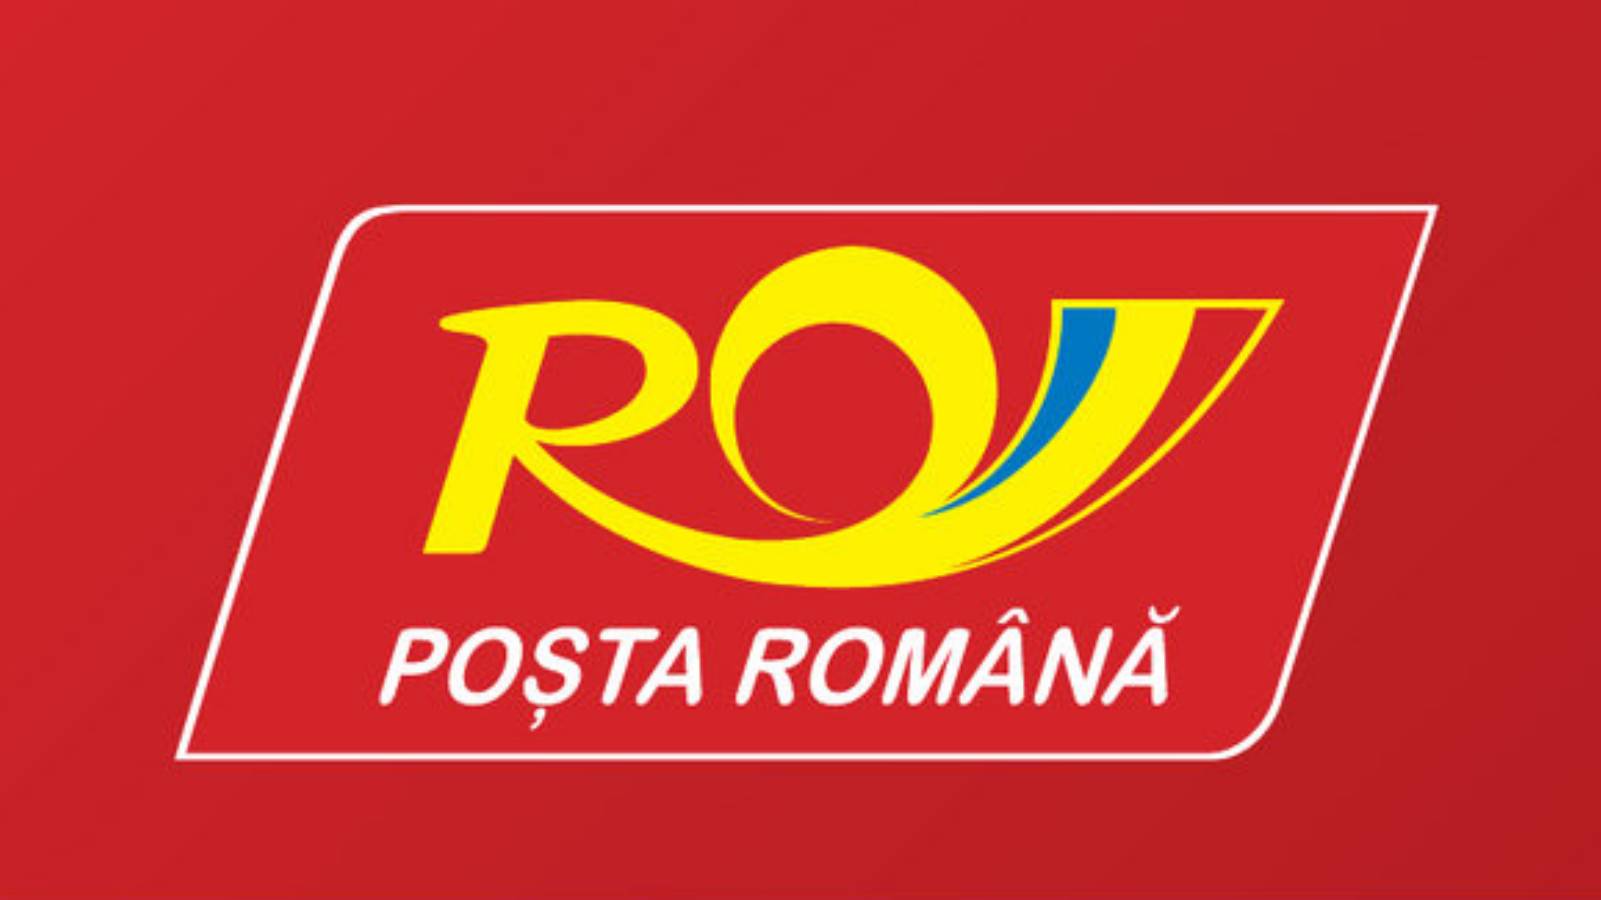 Frais de permis de la poste roumaine